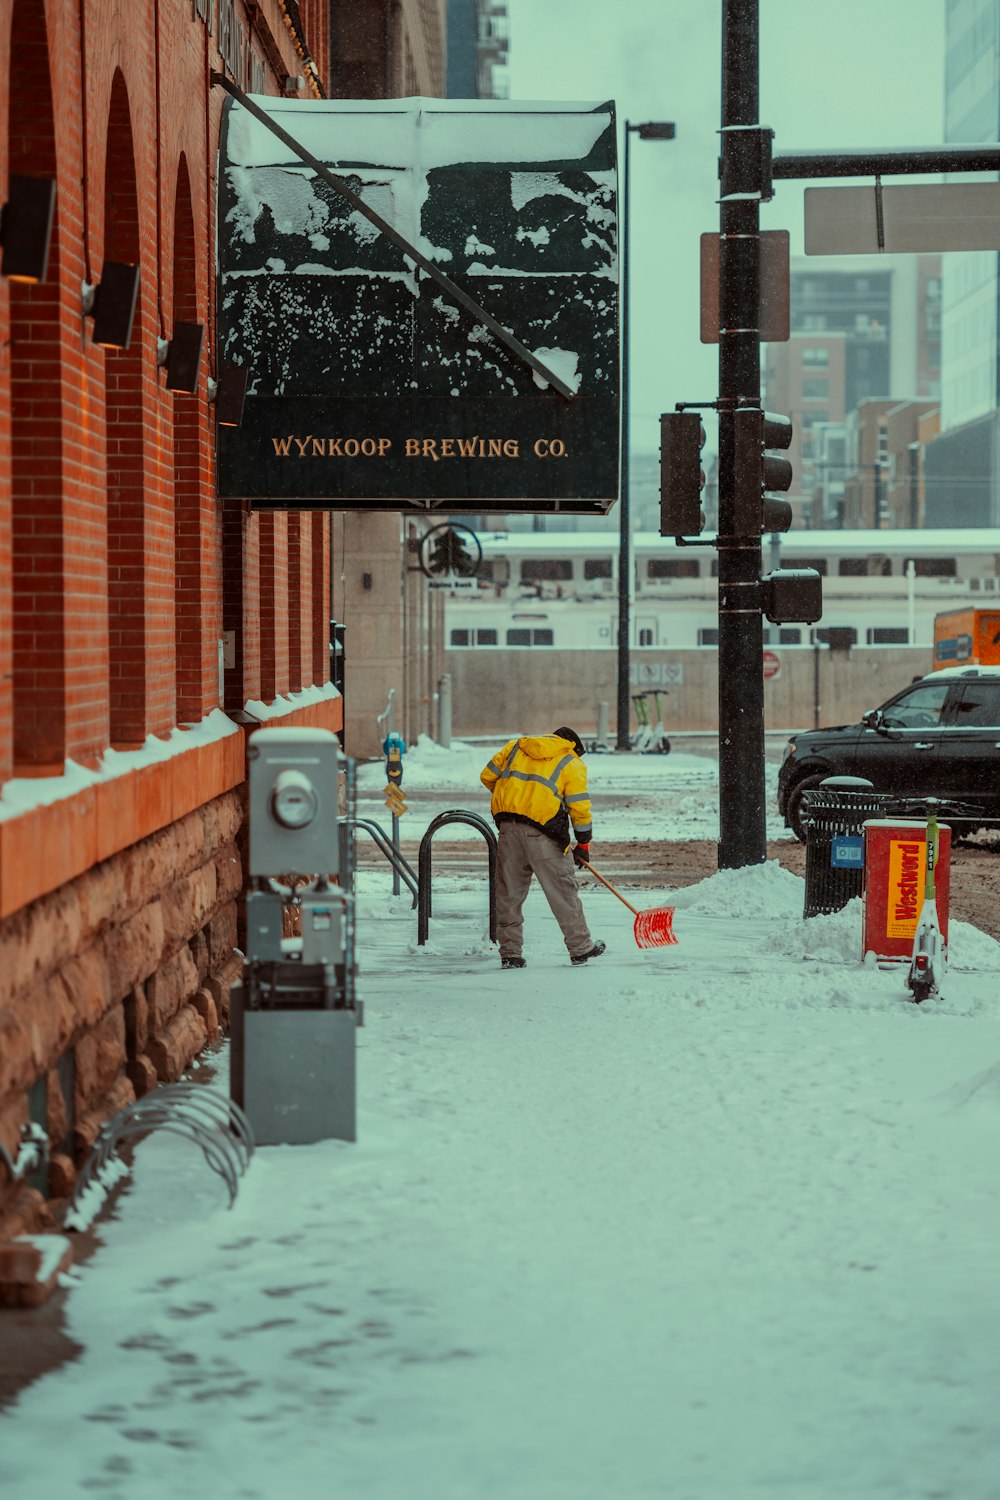 a man shoveling snow on a city street